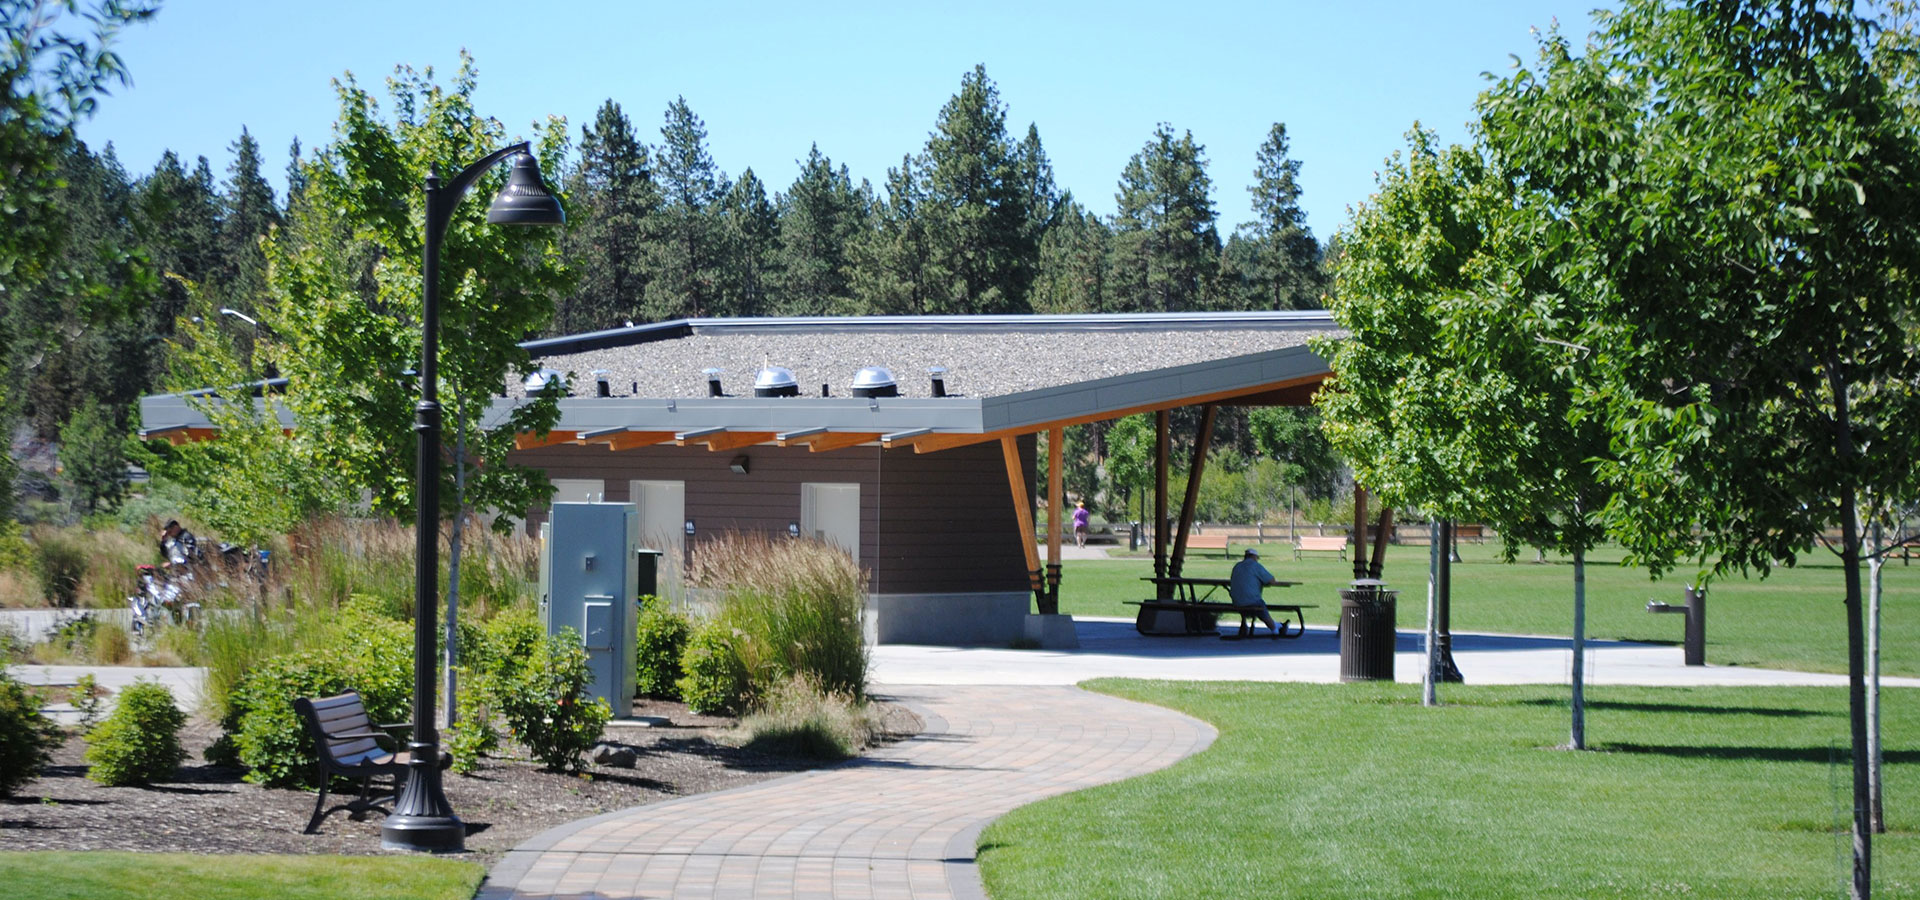 Riverbend Park's picnic pavilion.